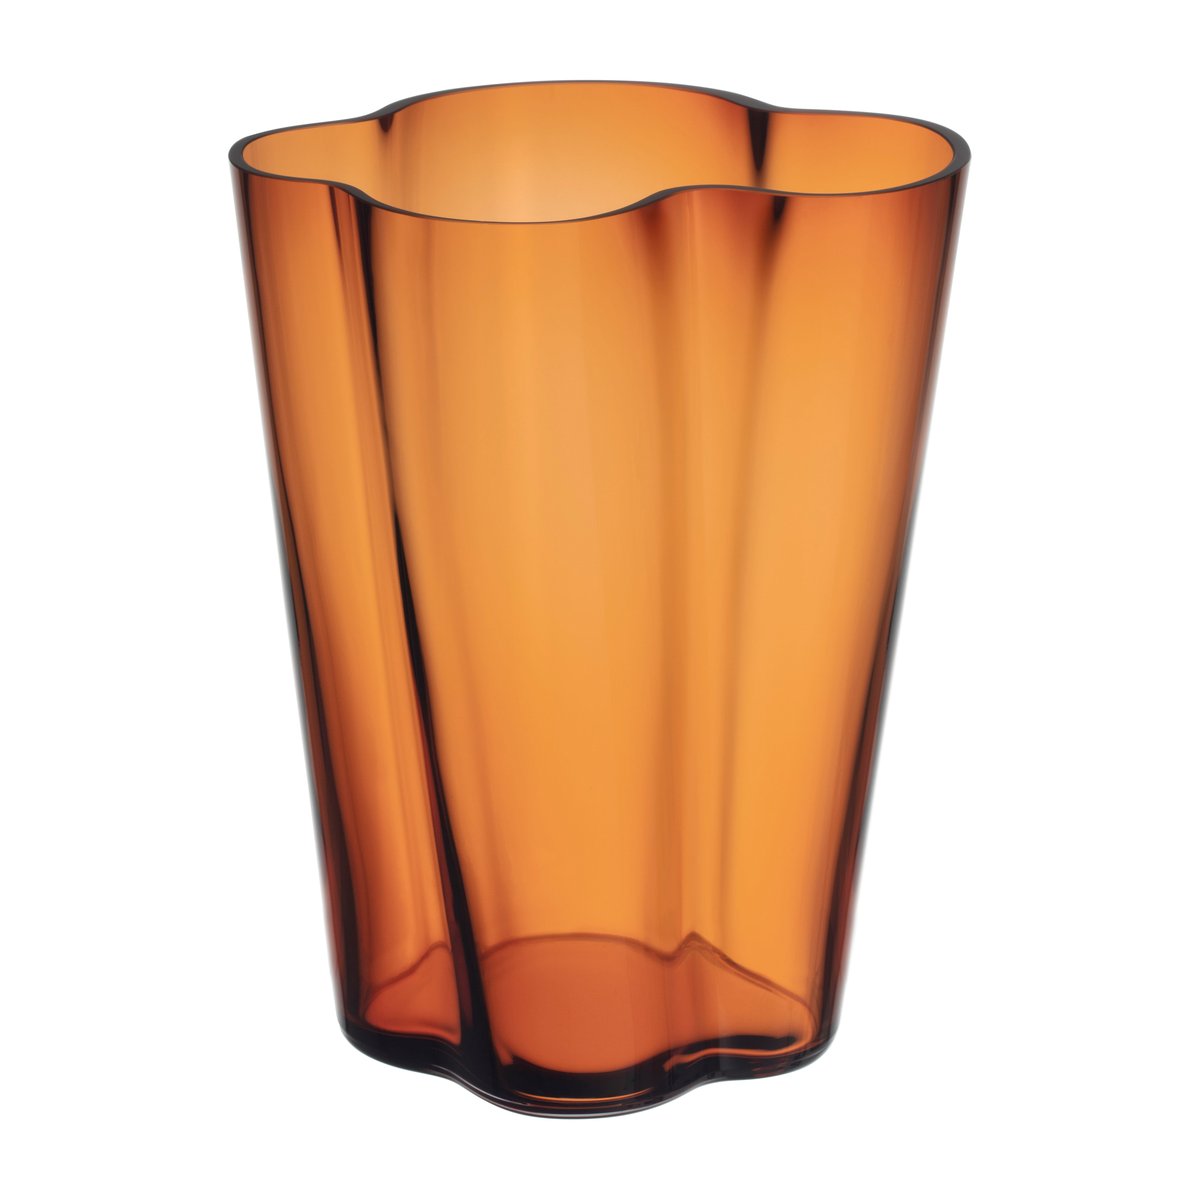 Bilde av Iittala Alvar Aalto vase kobber 270 mm